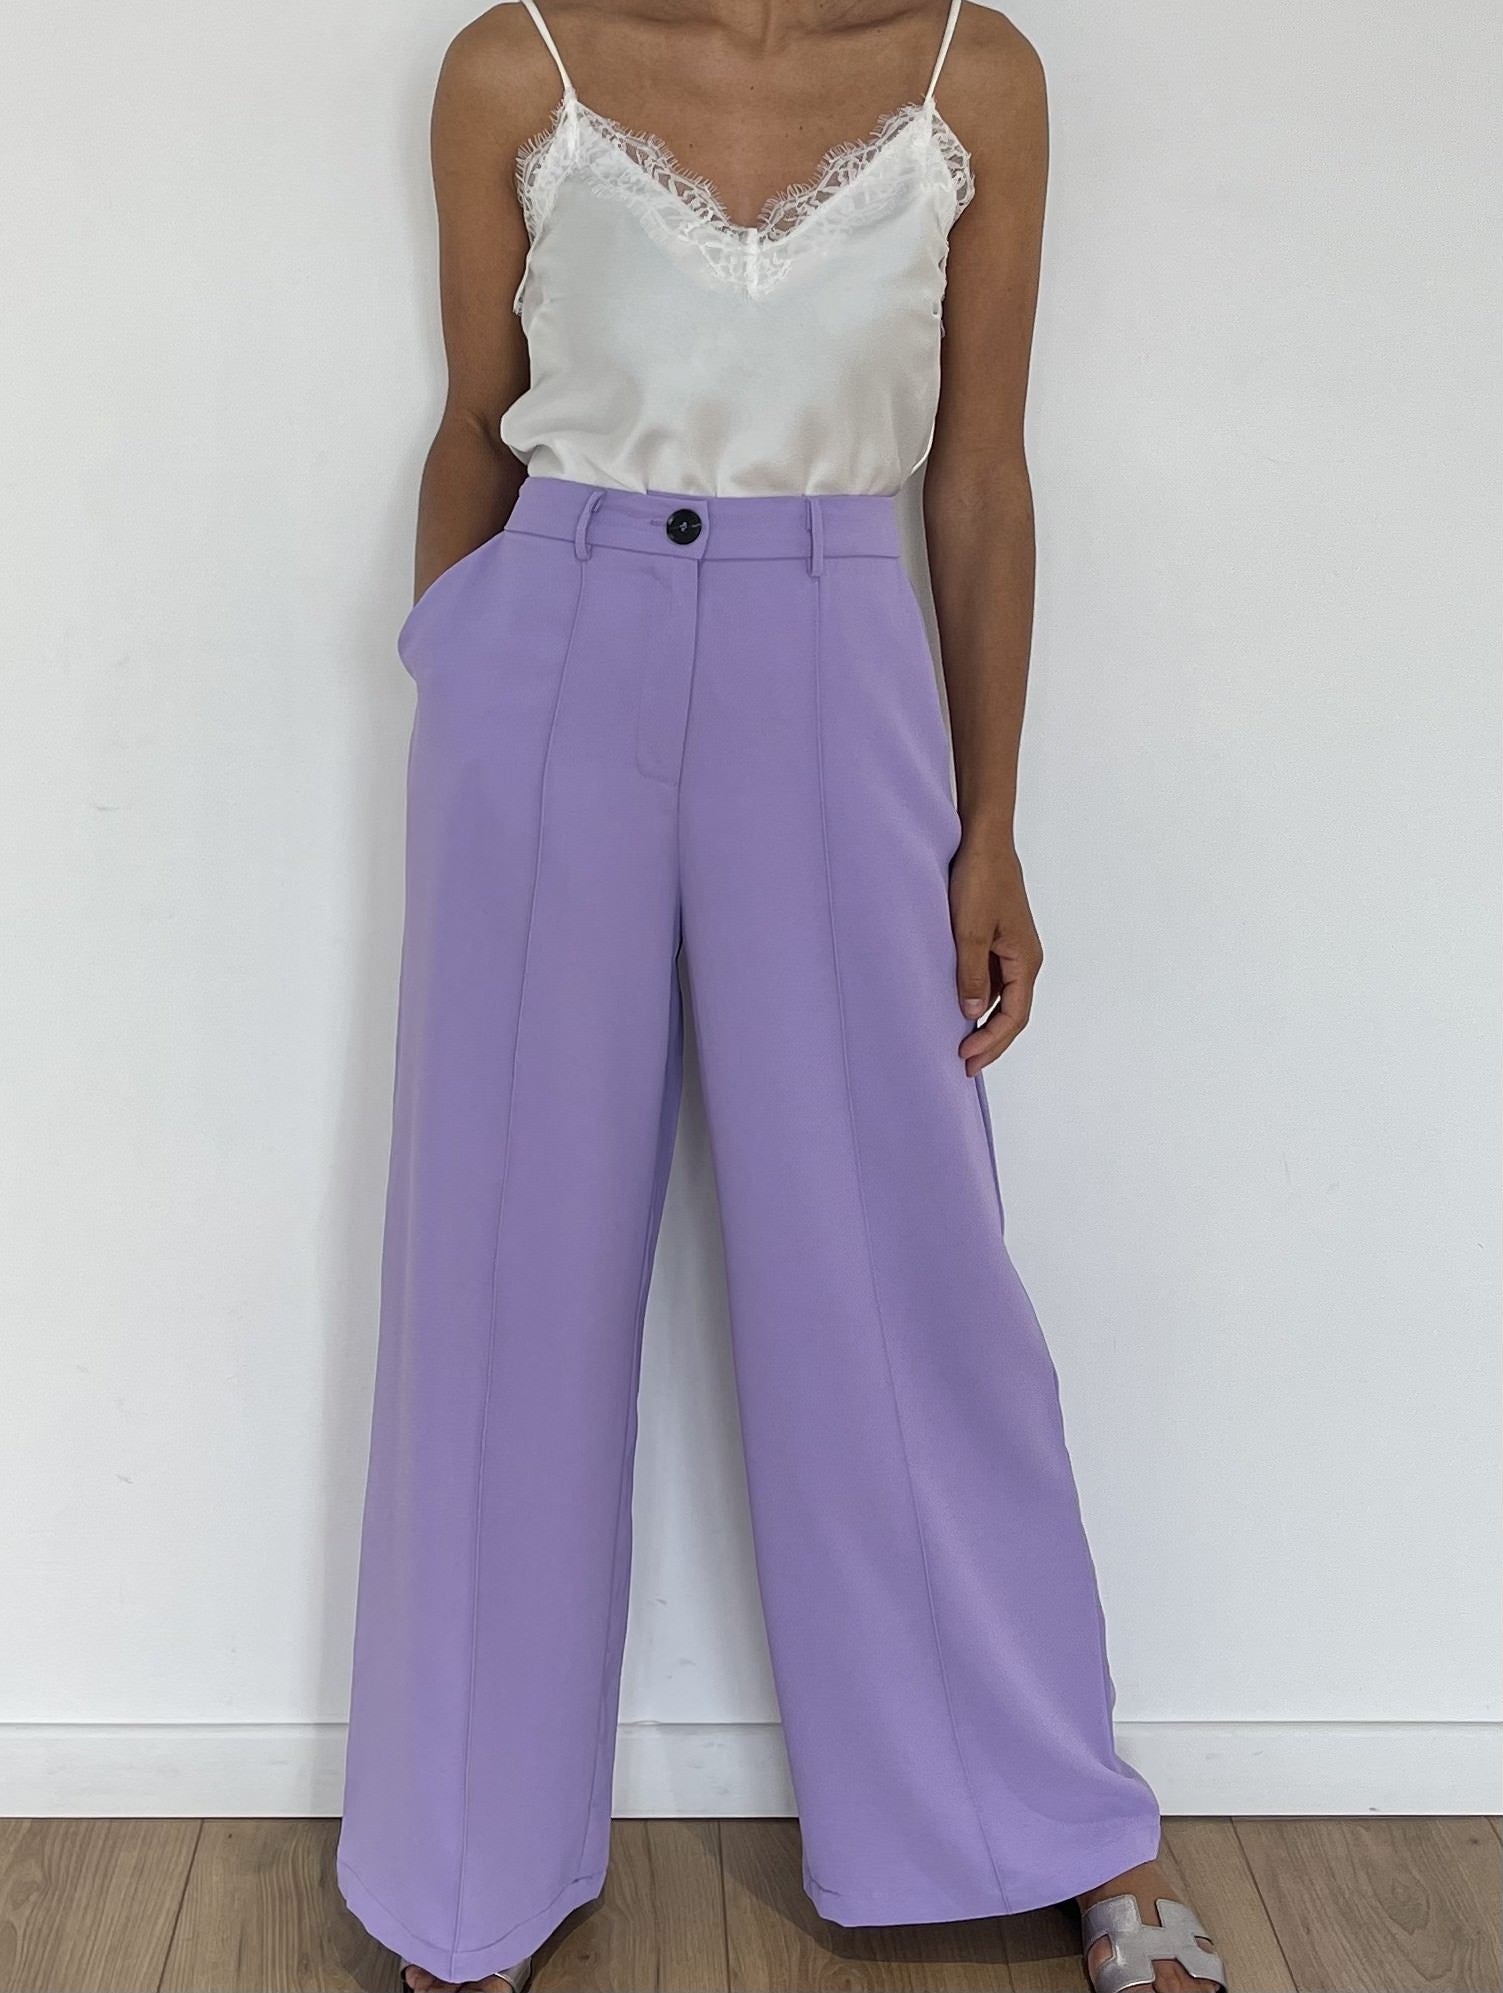 Pantalon droit lilas, parfait pour une tenue décontractée et colorée